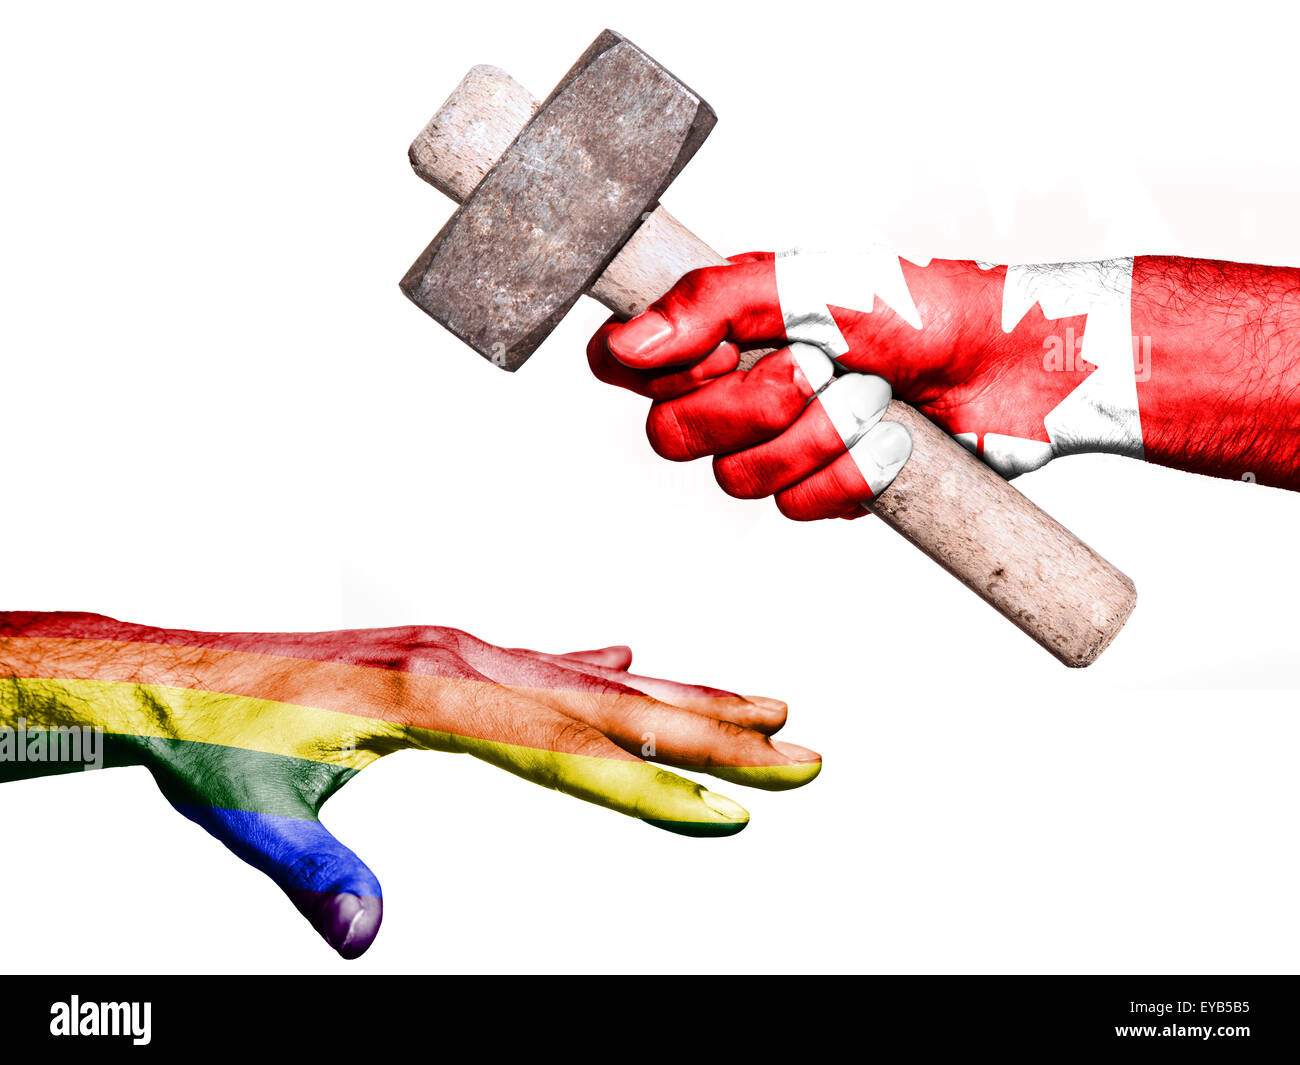 Drapeau du Canada surimprimées sur une main tenant un marteau lourd frappe une part représentant la paix. Image conceptuelle pour politica Banque D'Images